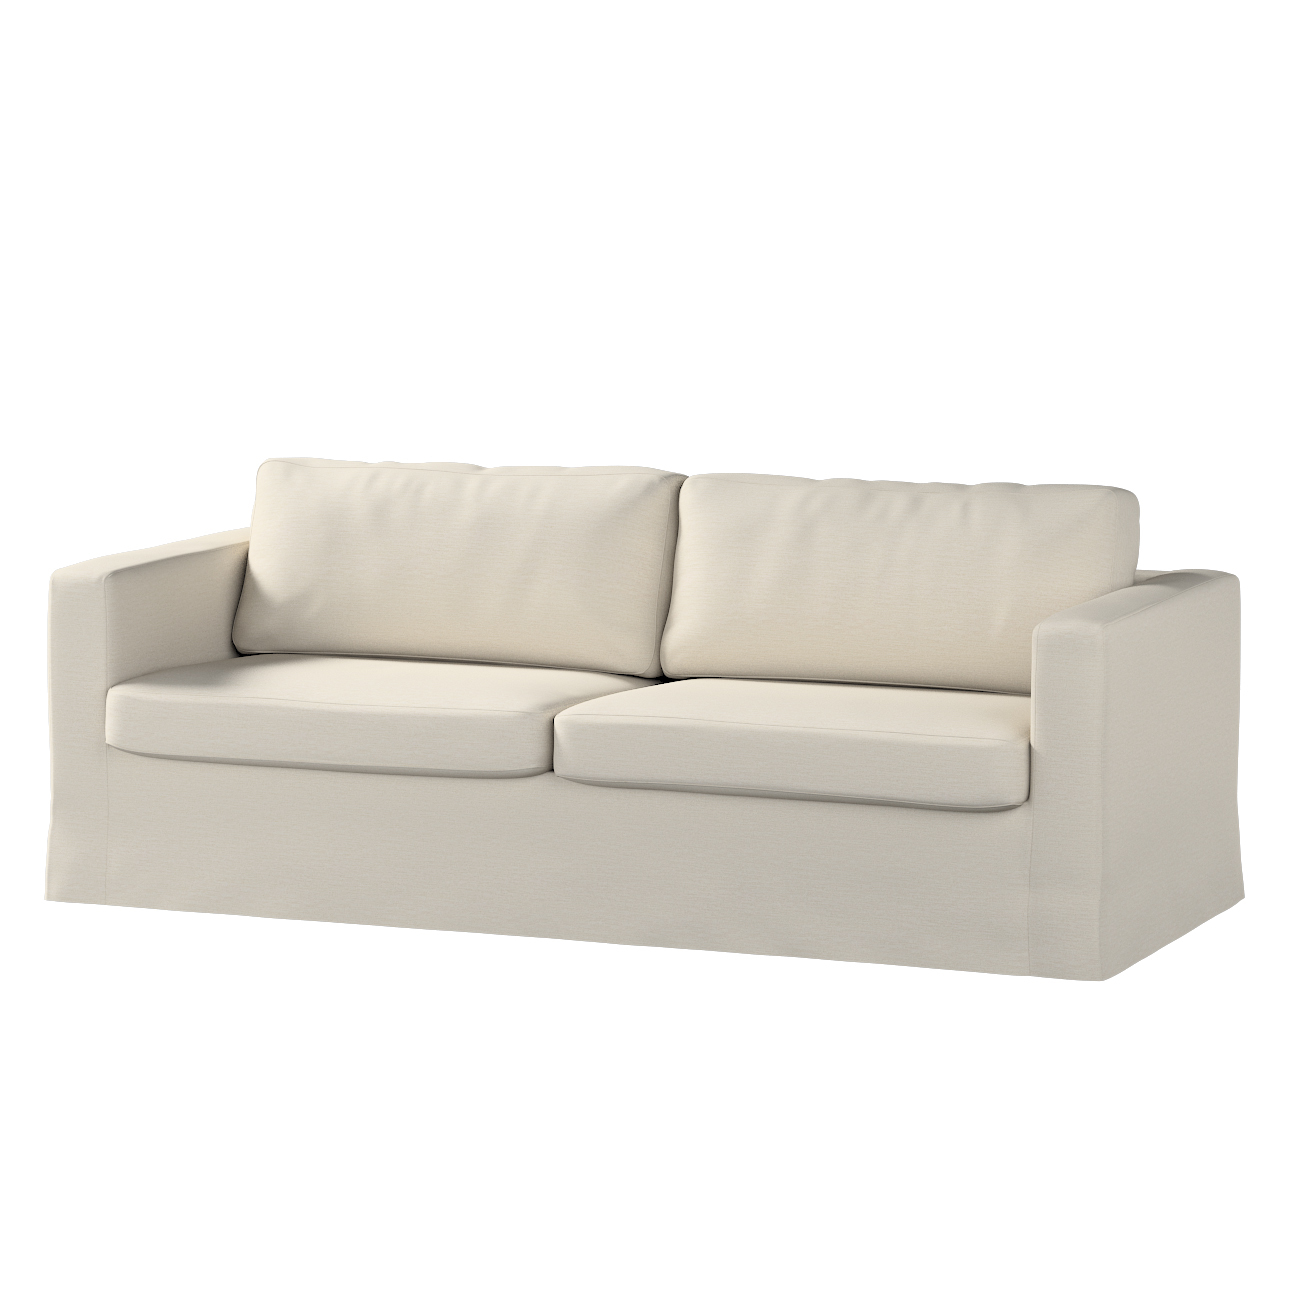 Bezug für Karlstad 3-Sitzer Sofa nicht ausklappbar, lang, hellbeige, Bezug günstig online kaufen